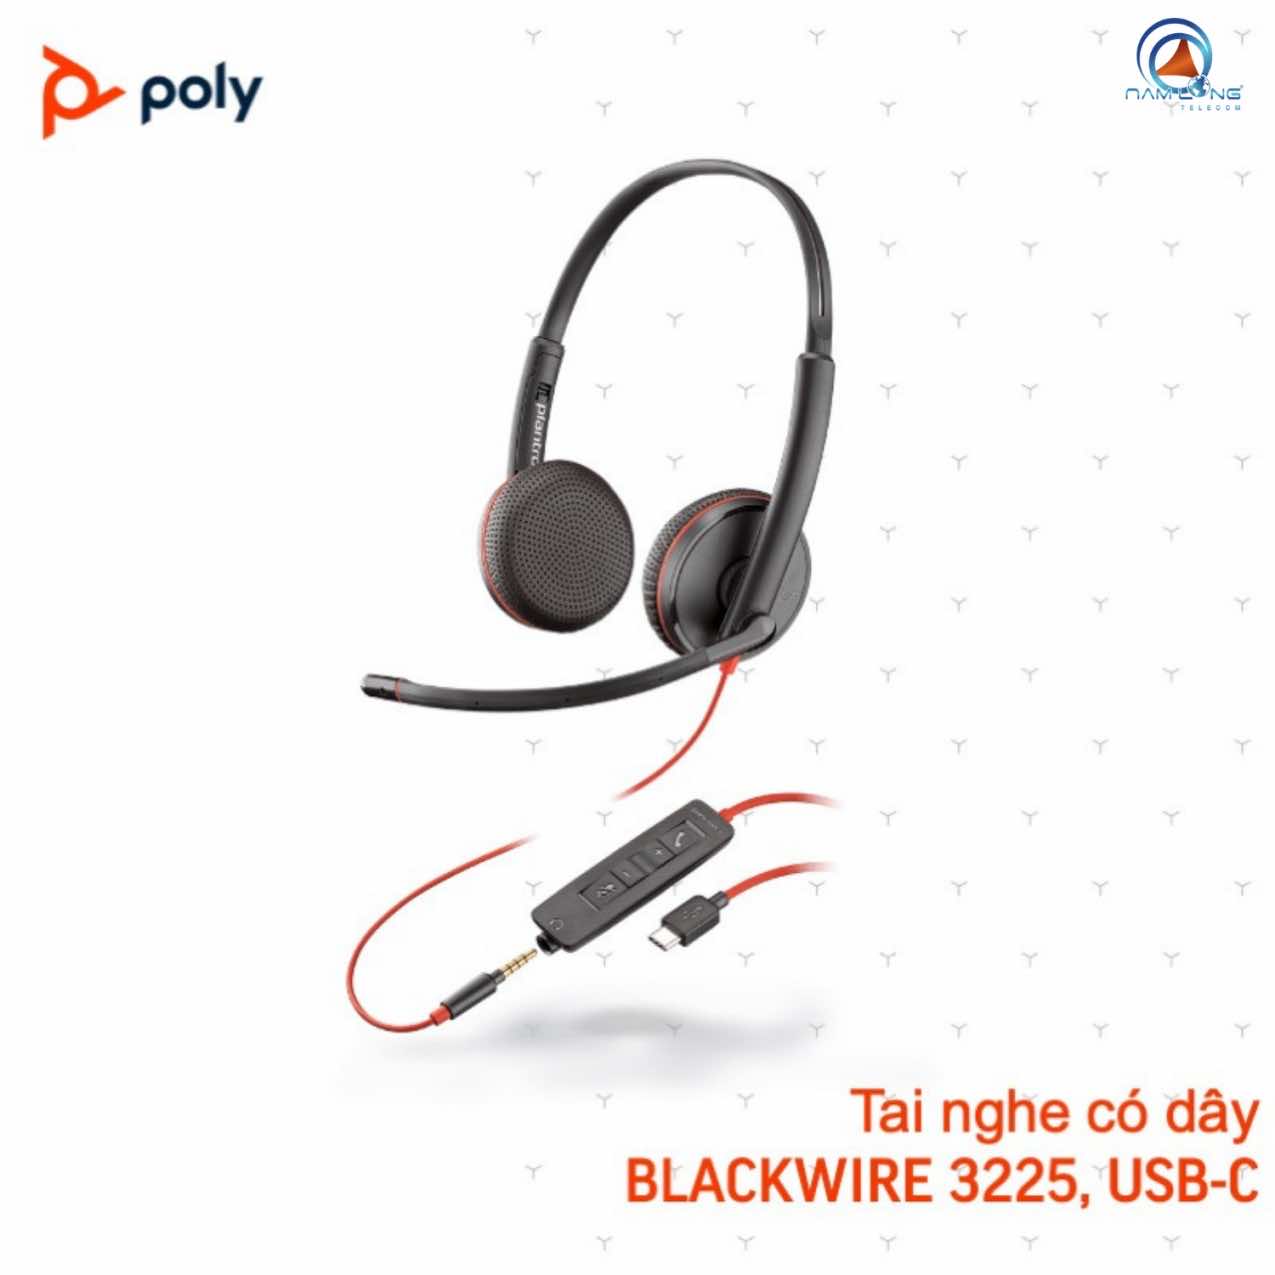 Tai nghe có dây Poly Blackwire 3225 USB Type A/C